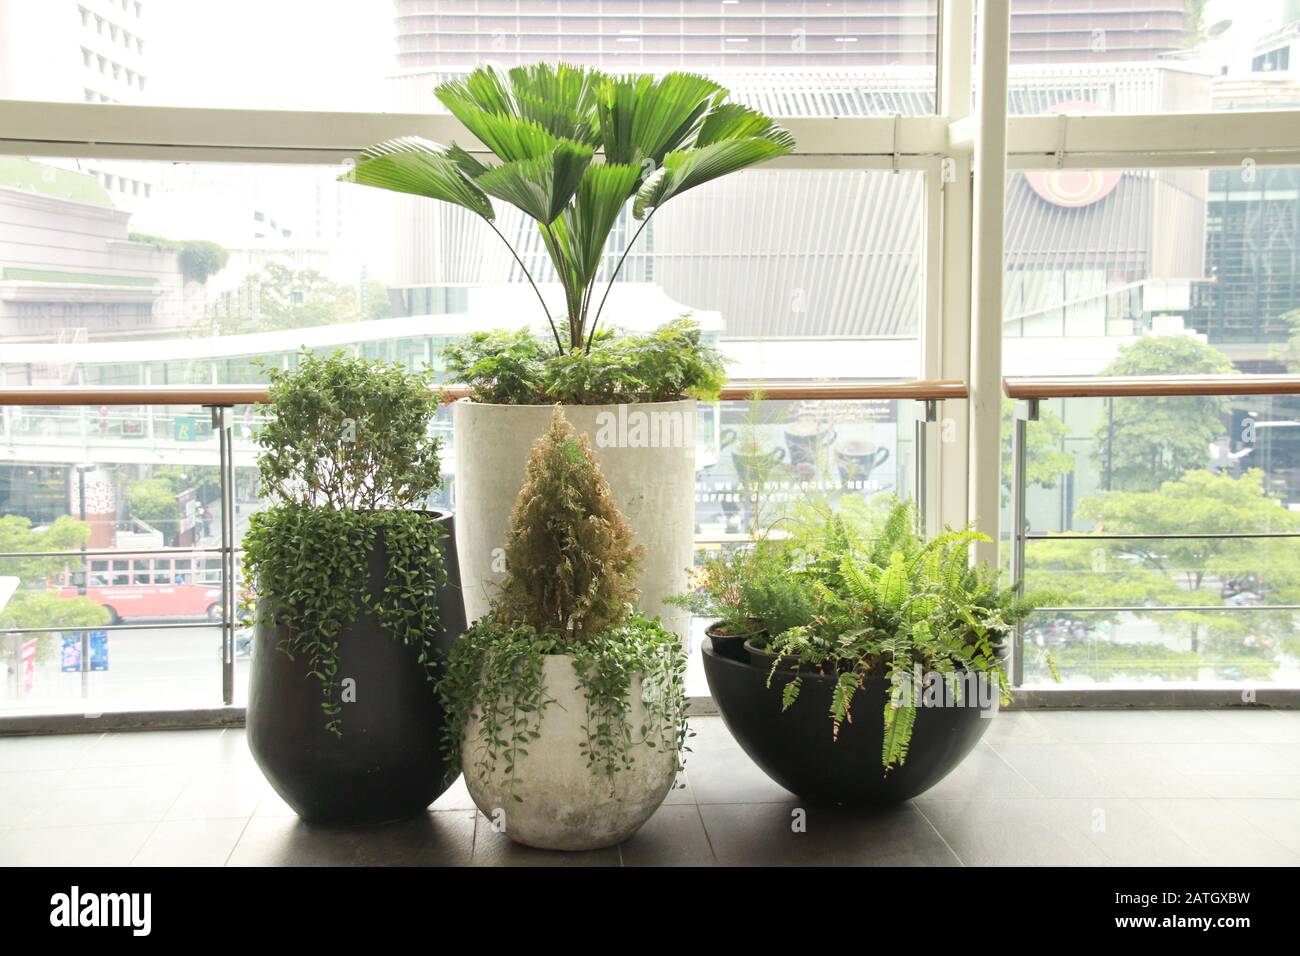 In Innenräumen schmücken Pflanzen den Arbeitsplatz, um einen ruhigen, geschlechtsneutralen und gesunden Arbeitsraum zu fördern Stockfoto